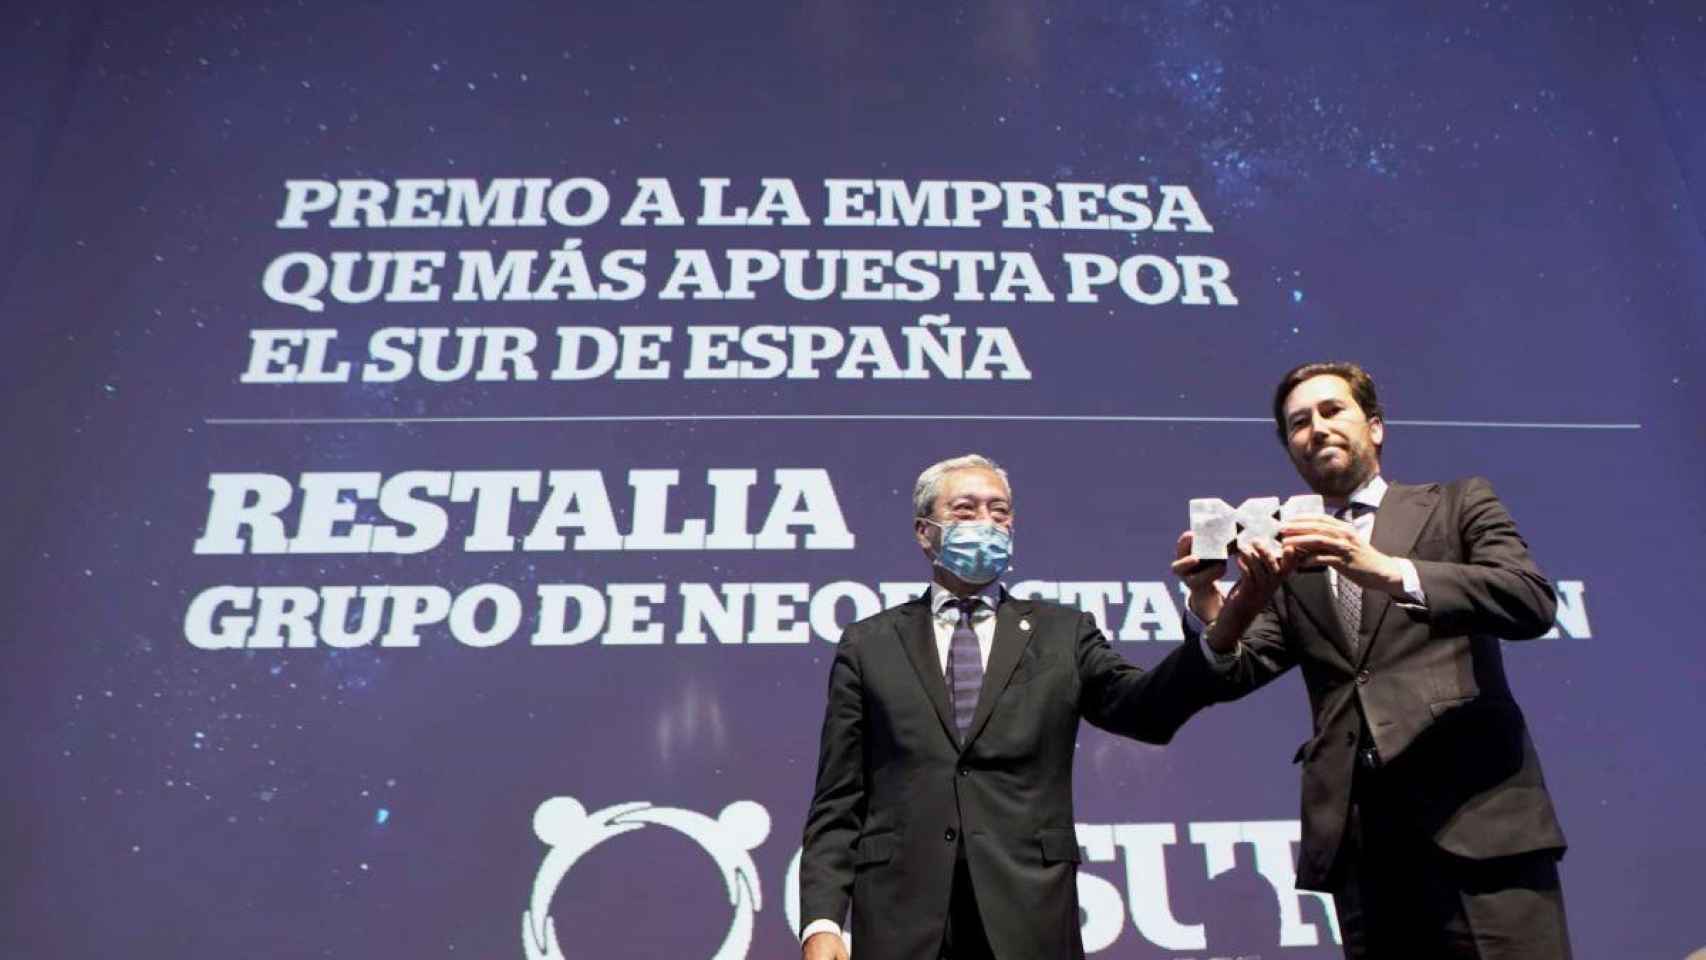 El consejero y director internacional de Restalia Holding, Enrique Lasso de la Vega, recoge el galardón en la gala celebrada en Sevilla / GRUPO RESTALIA